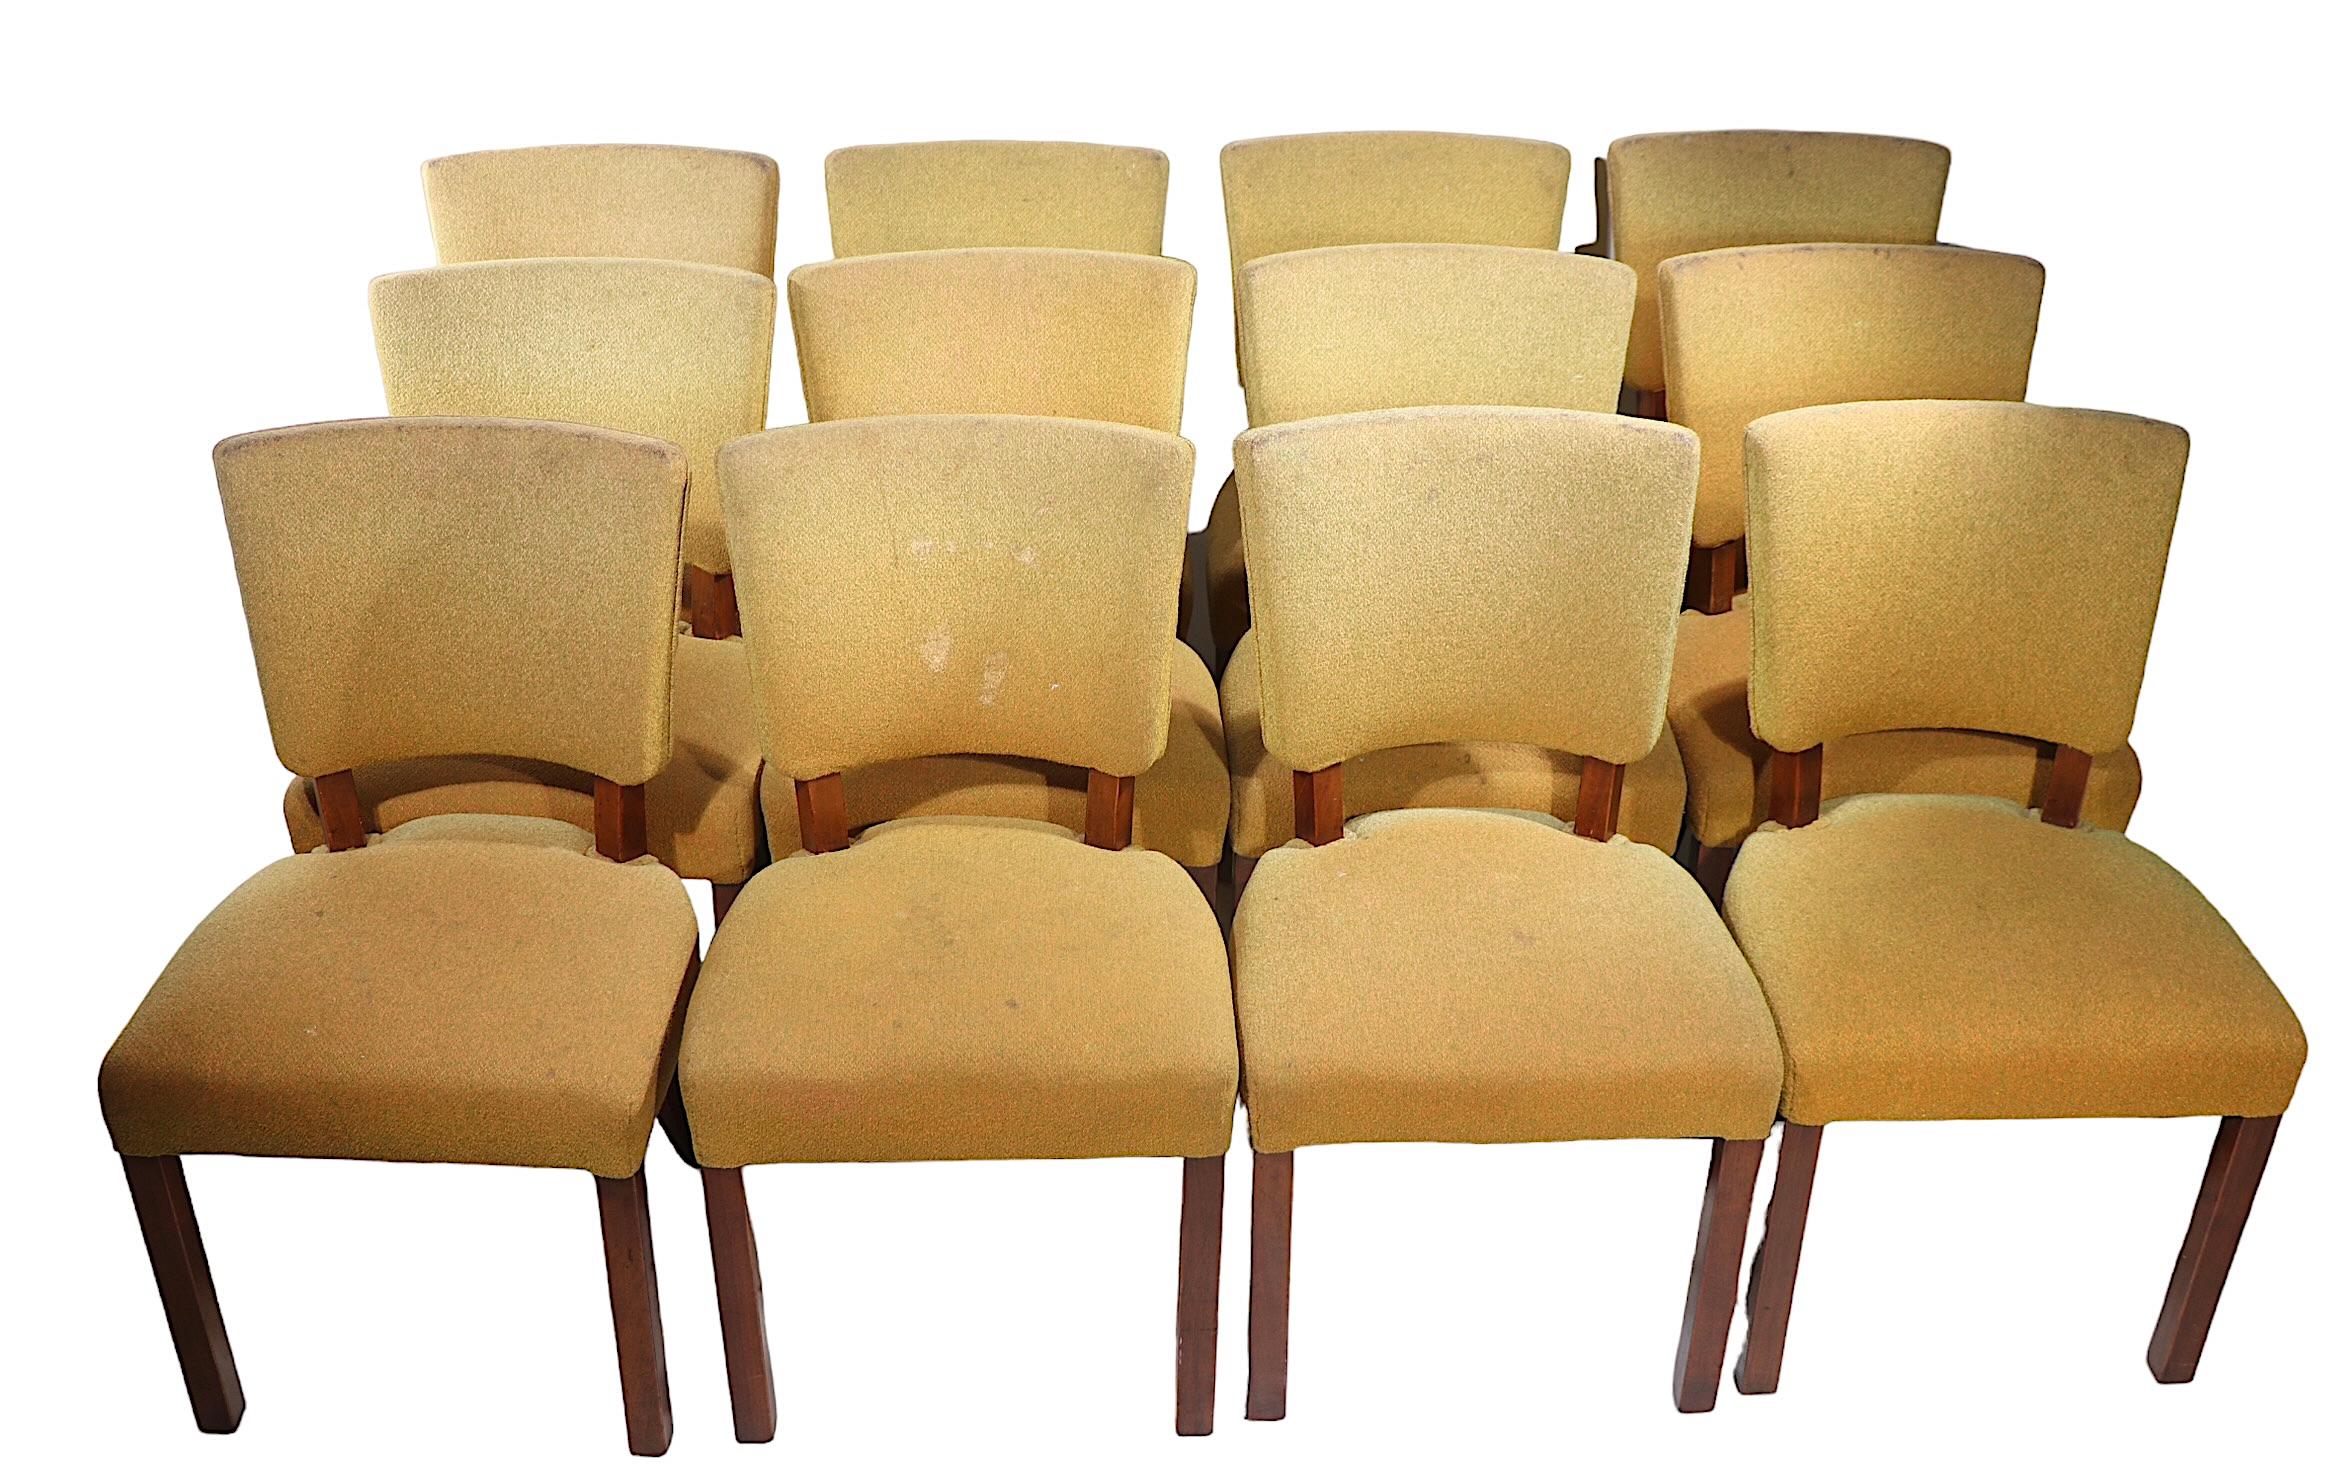 Ensemble de douze chaises de salle à manger Art Déco attribuées à Jindrich Halabala,  circa 1930's. Les chaises sont structurellement saines et robustes, le tissu présente des taches et de l'usure. Il est difficile de trouver de grands ensembles